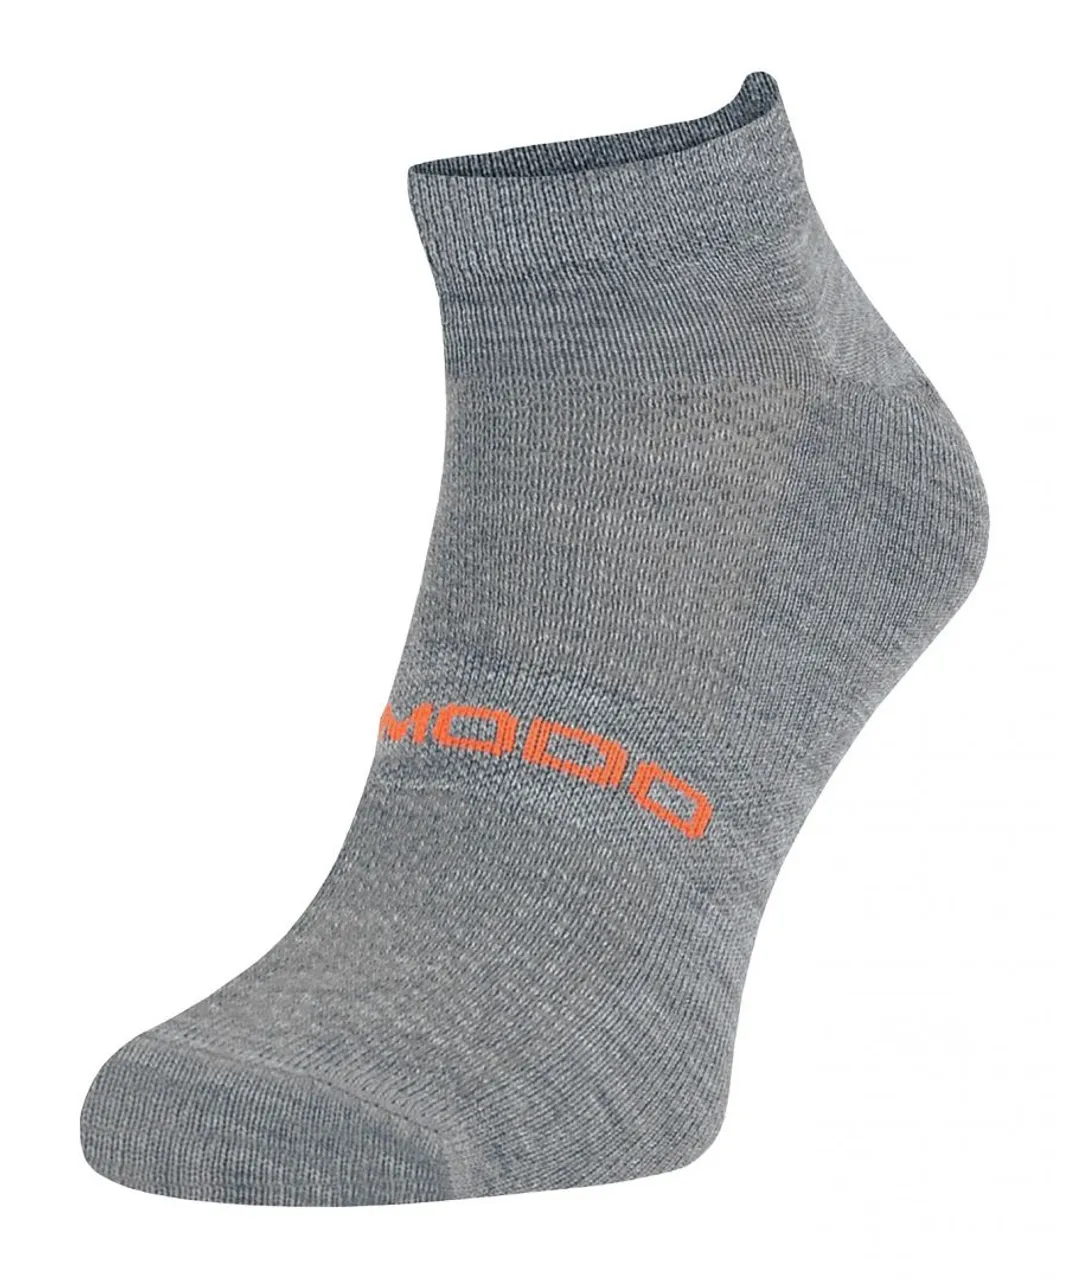 Comodo Mens - Unisex Merino Wool Running Socks